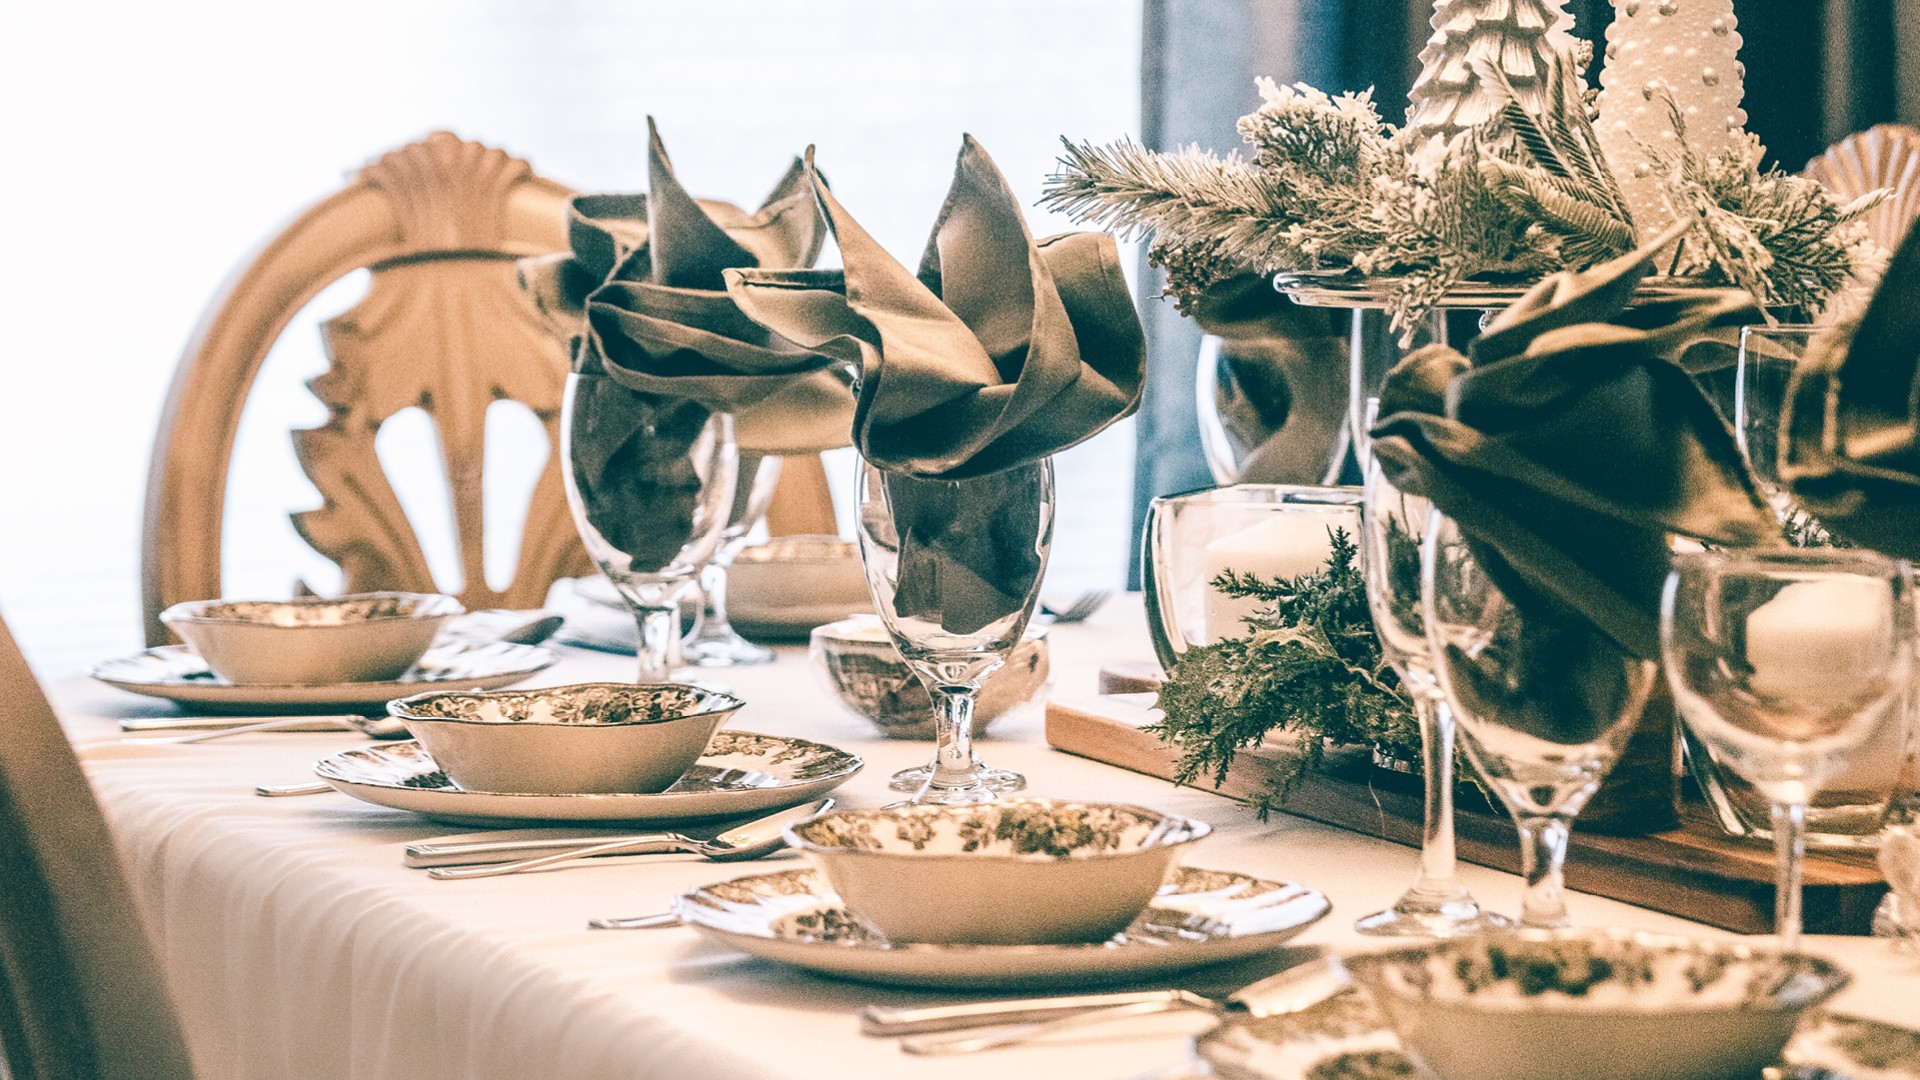 Déco table noël : 36 idées de décorations pour un magnifique Noël